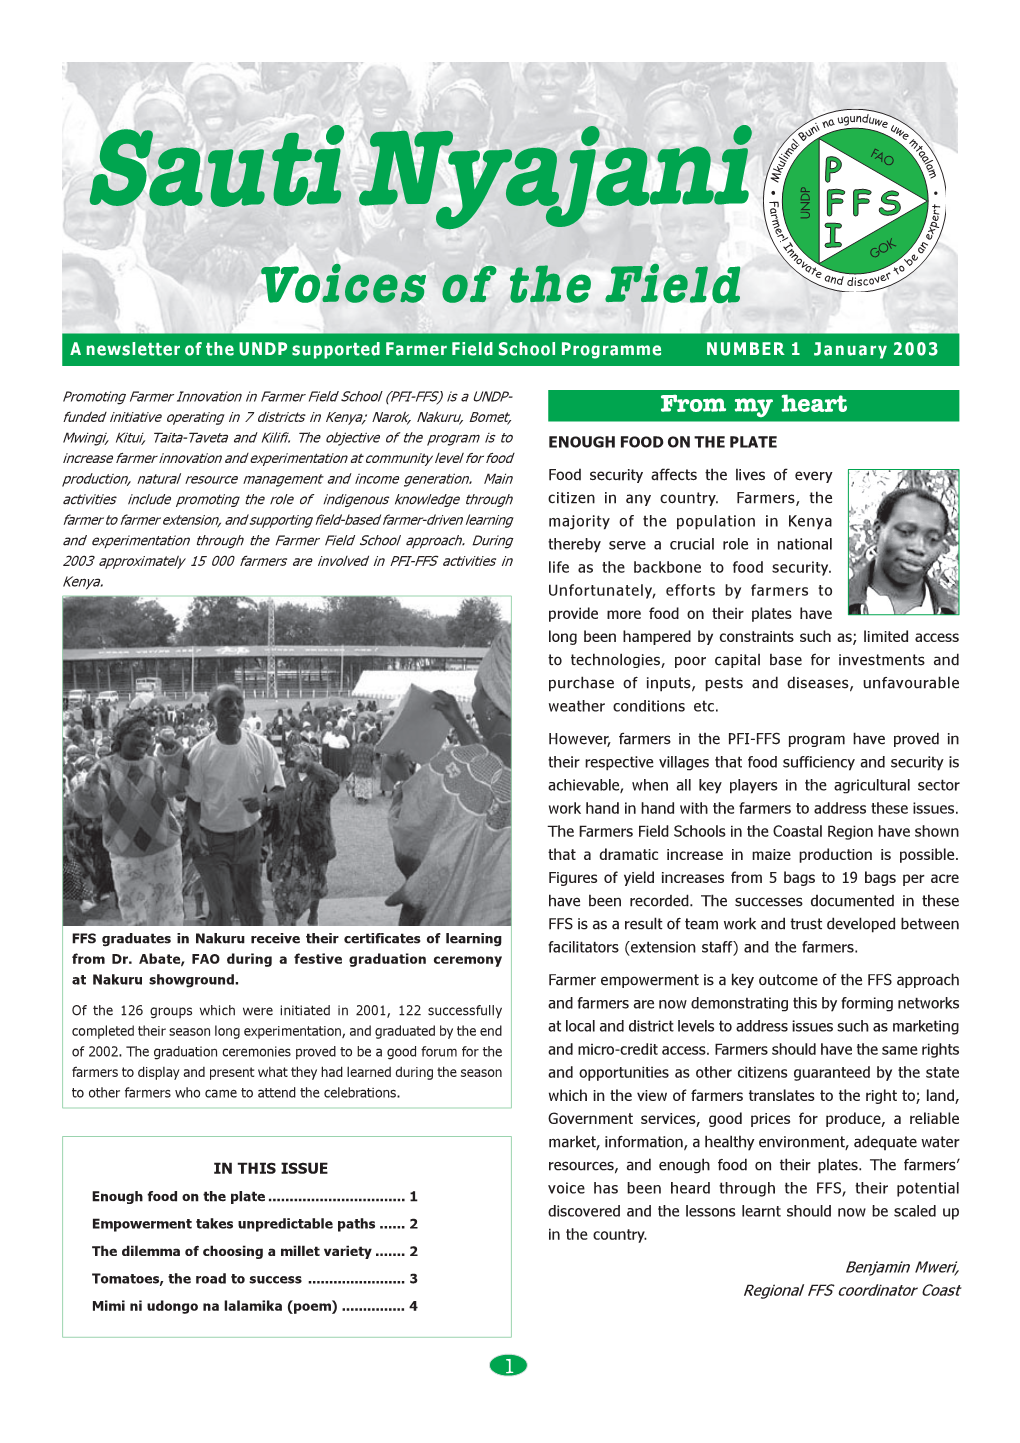 PFI-FFS Newsletter Issue 1